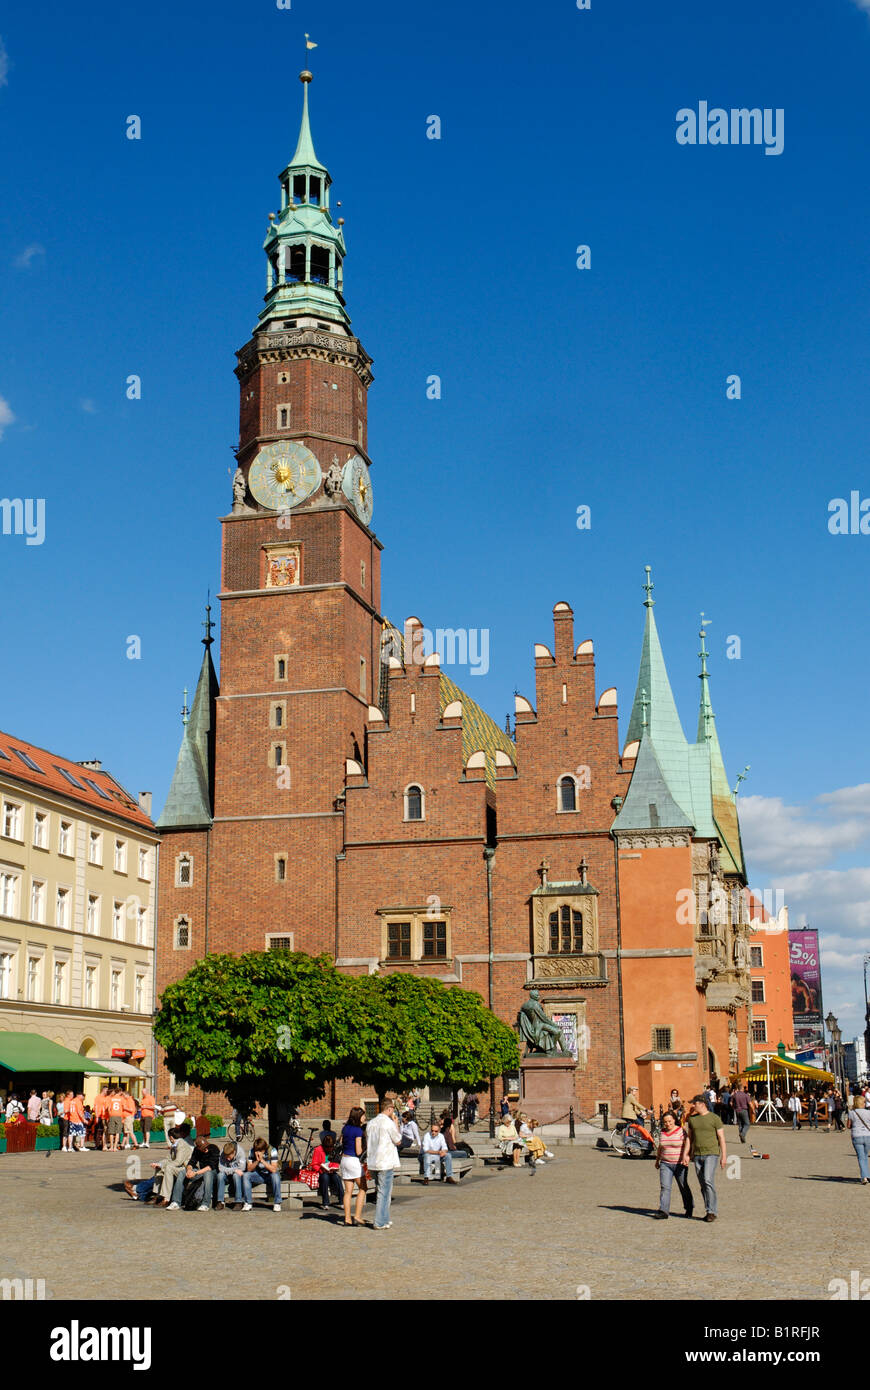 Markt Platz Rynek von Breslau mit Rathaus, die Tuchhallen, Gewandhaus oder Tuchmacher Halle, Breslau, Schlesien, Polen, Europa Stockfoto